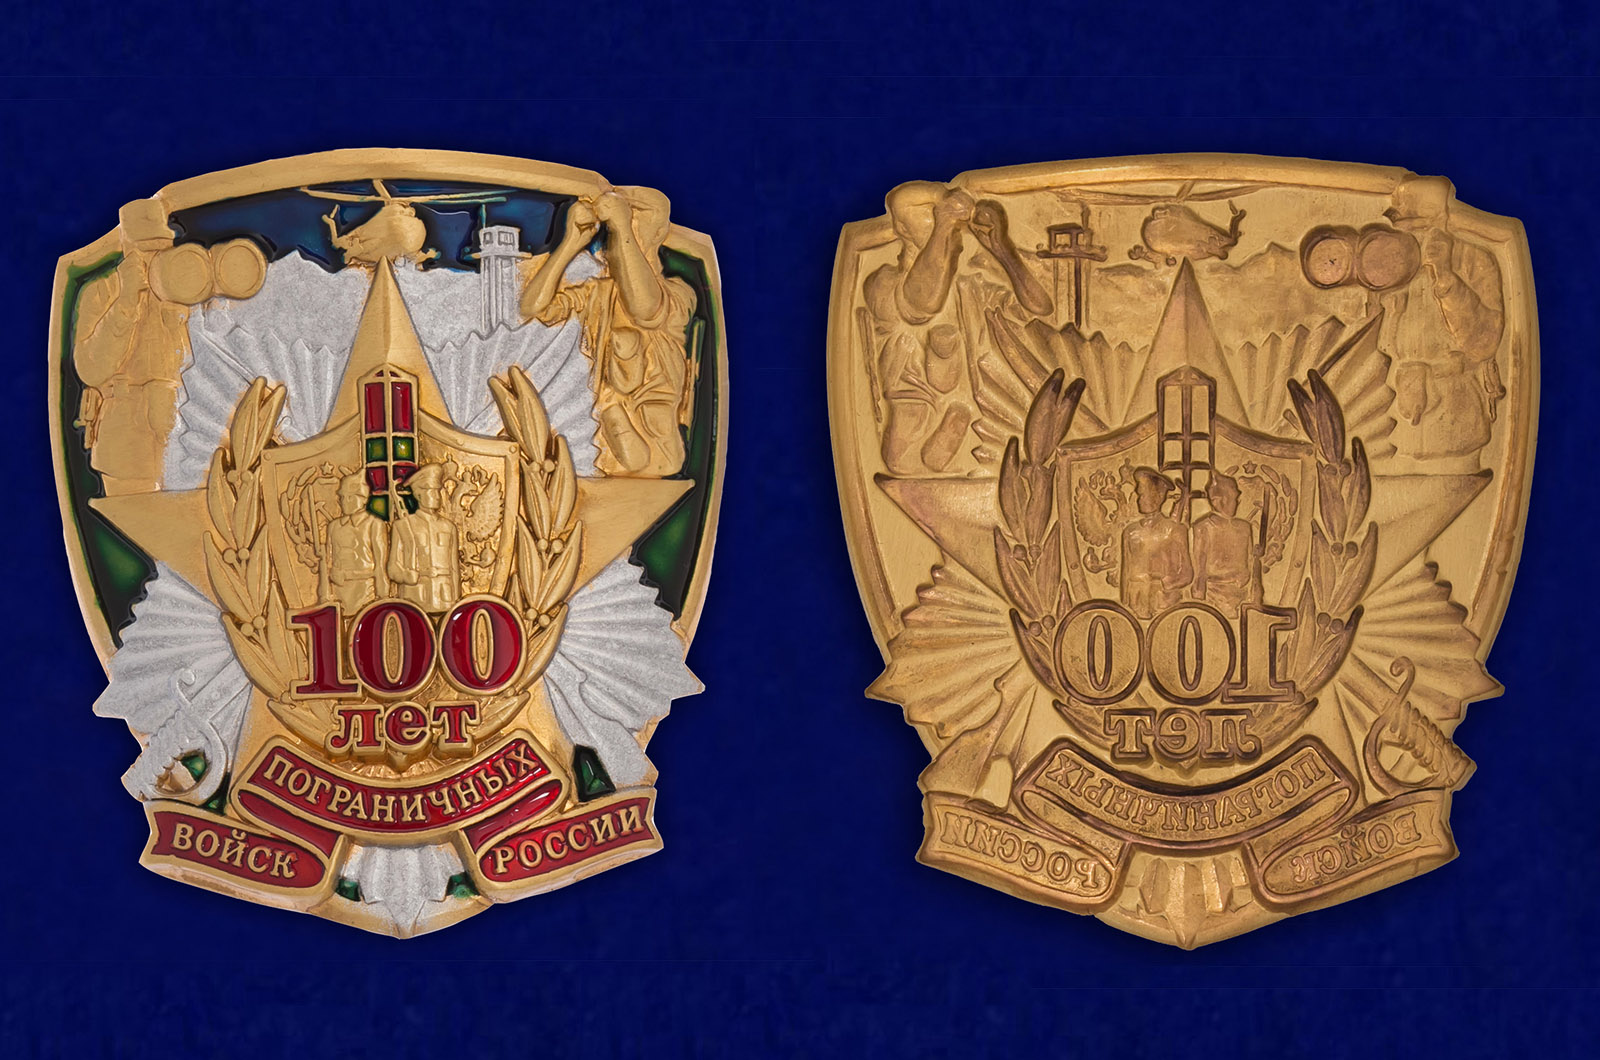 Купить сувенирный жетон "100 лет Пограничных войск России" с доставкой